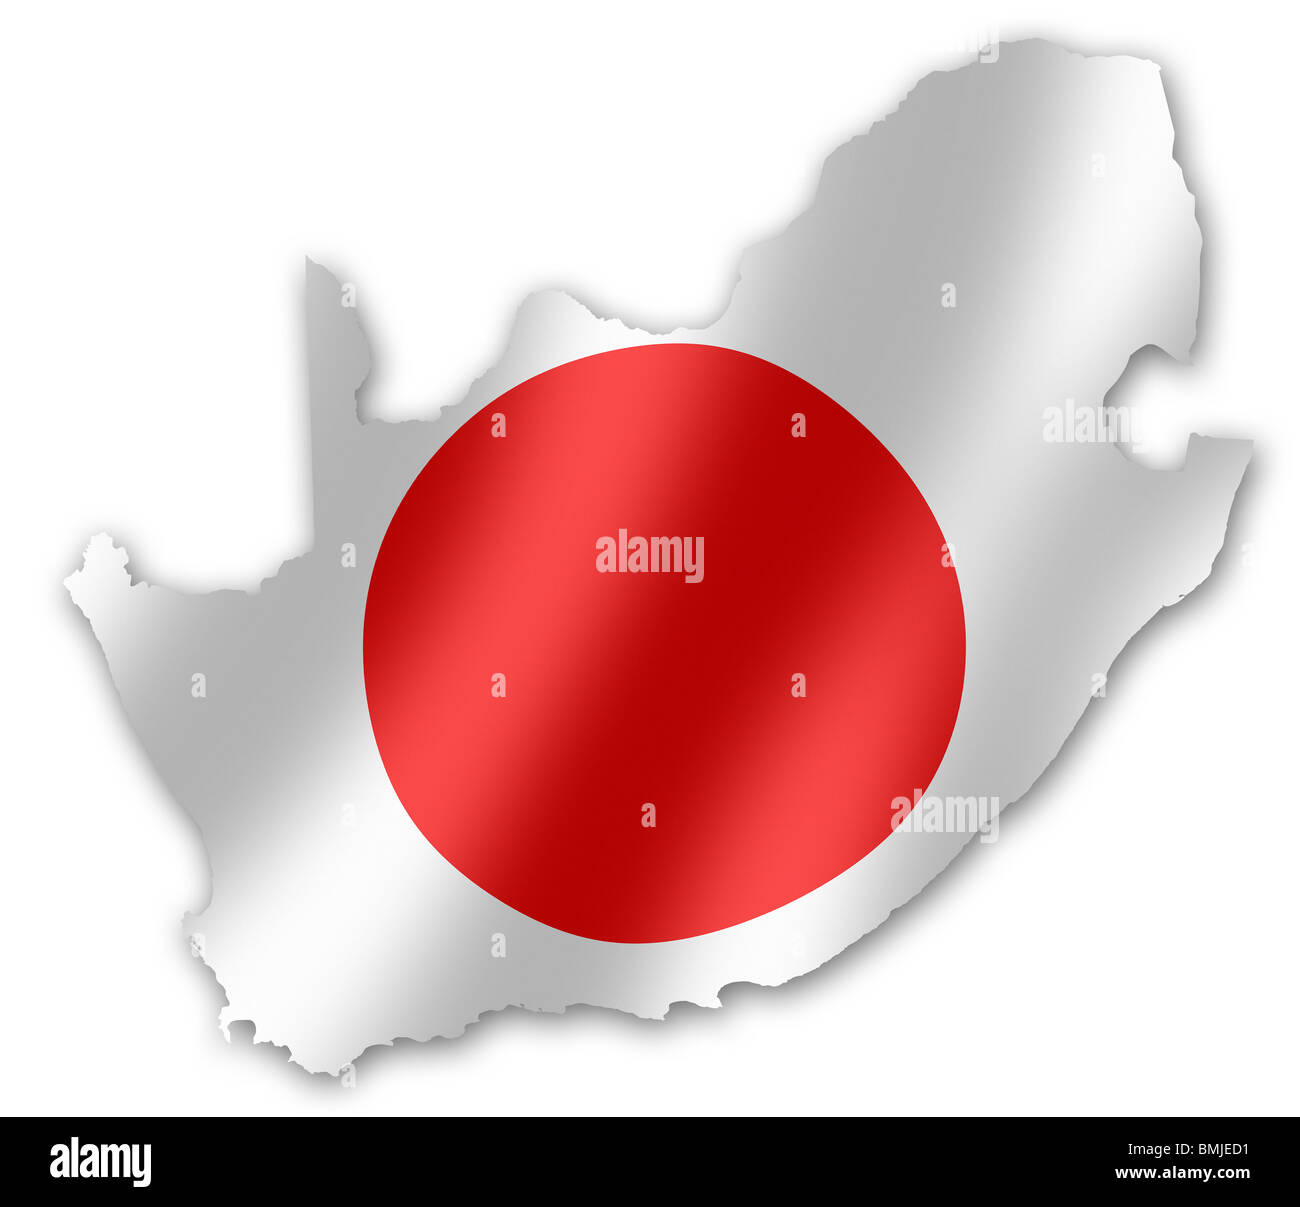 Mappa del Sud Africa con la bandiera giapponese inset, per la Coppa del Mondo FIFA 2010 Football Foto Stock